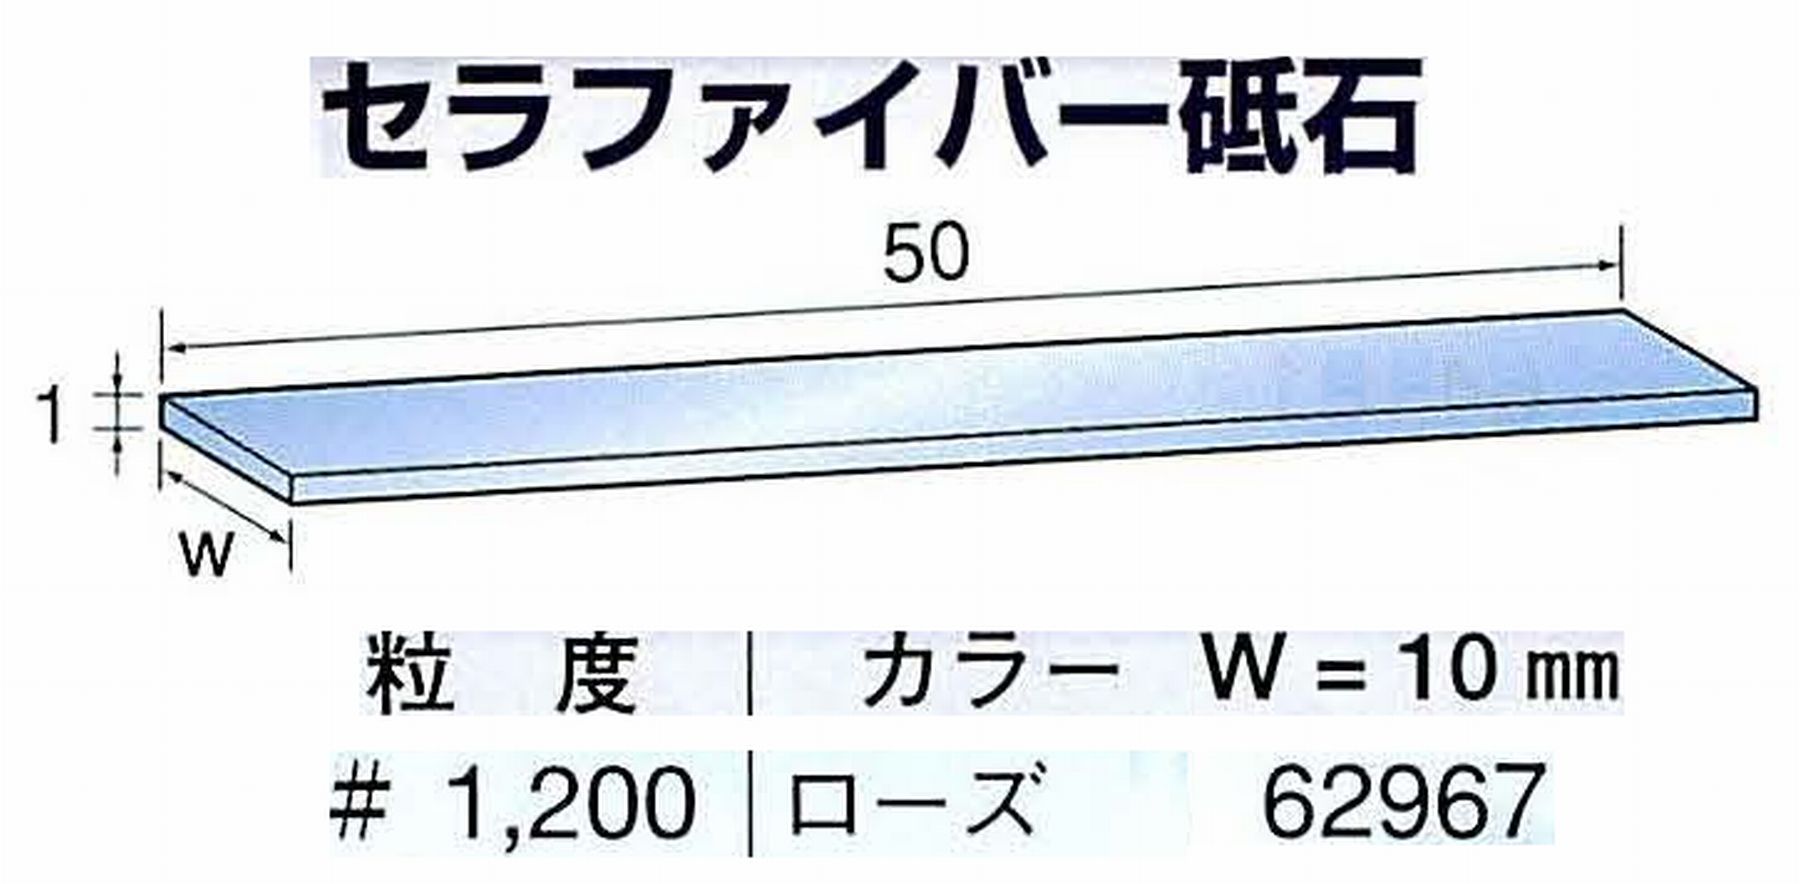 ナカニシ/NAKANISHI ペンシルタイプ 電動・エアーヤスリ(左右動) スイングラスター専用工具 セラファイバー砥石 62967